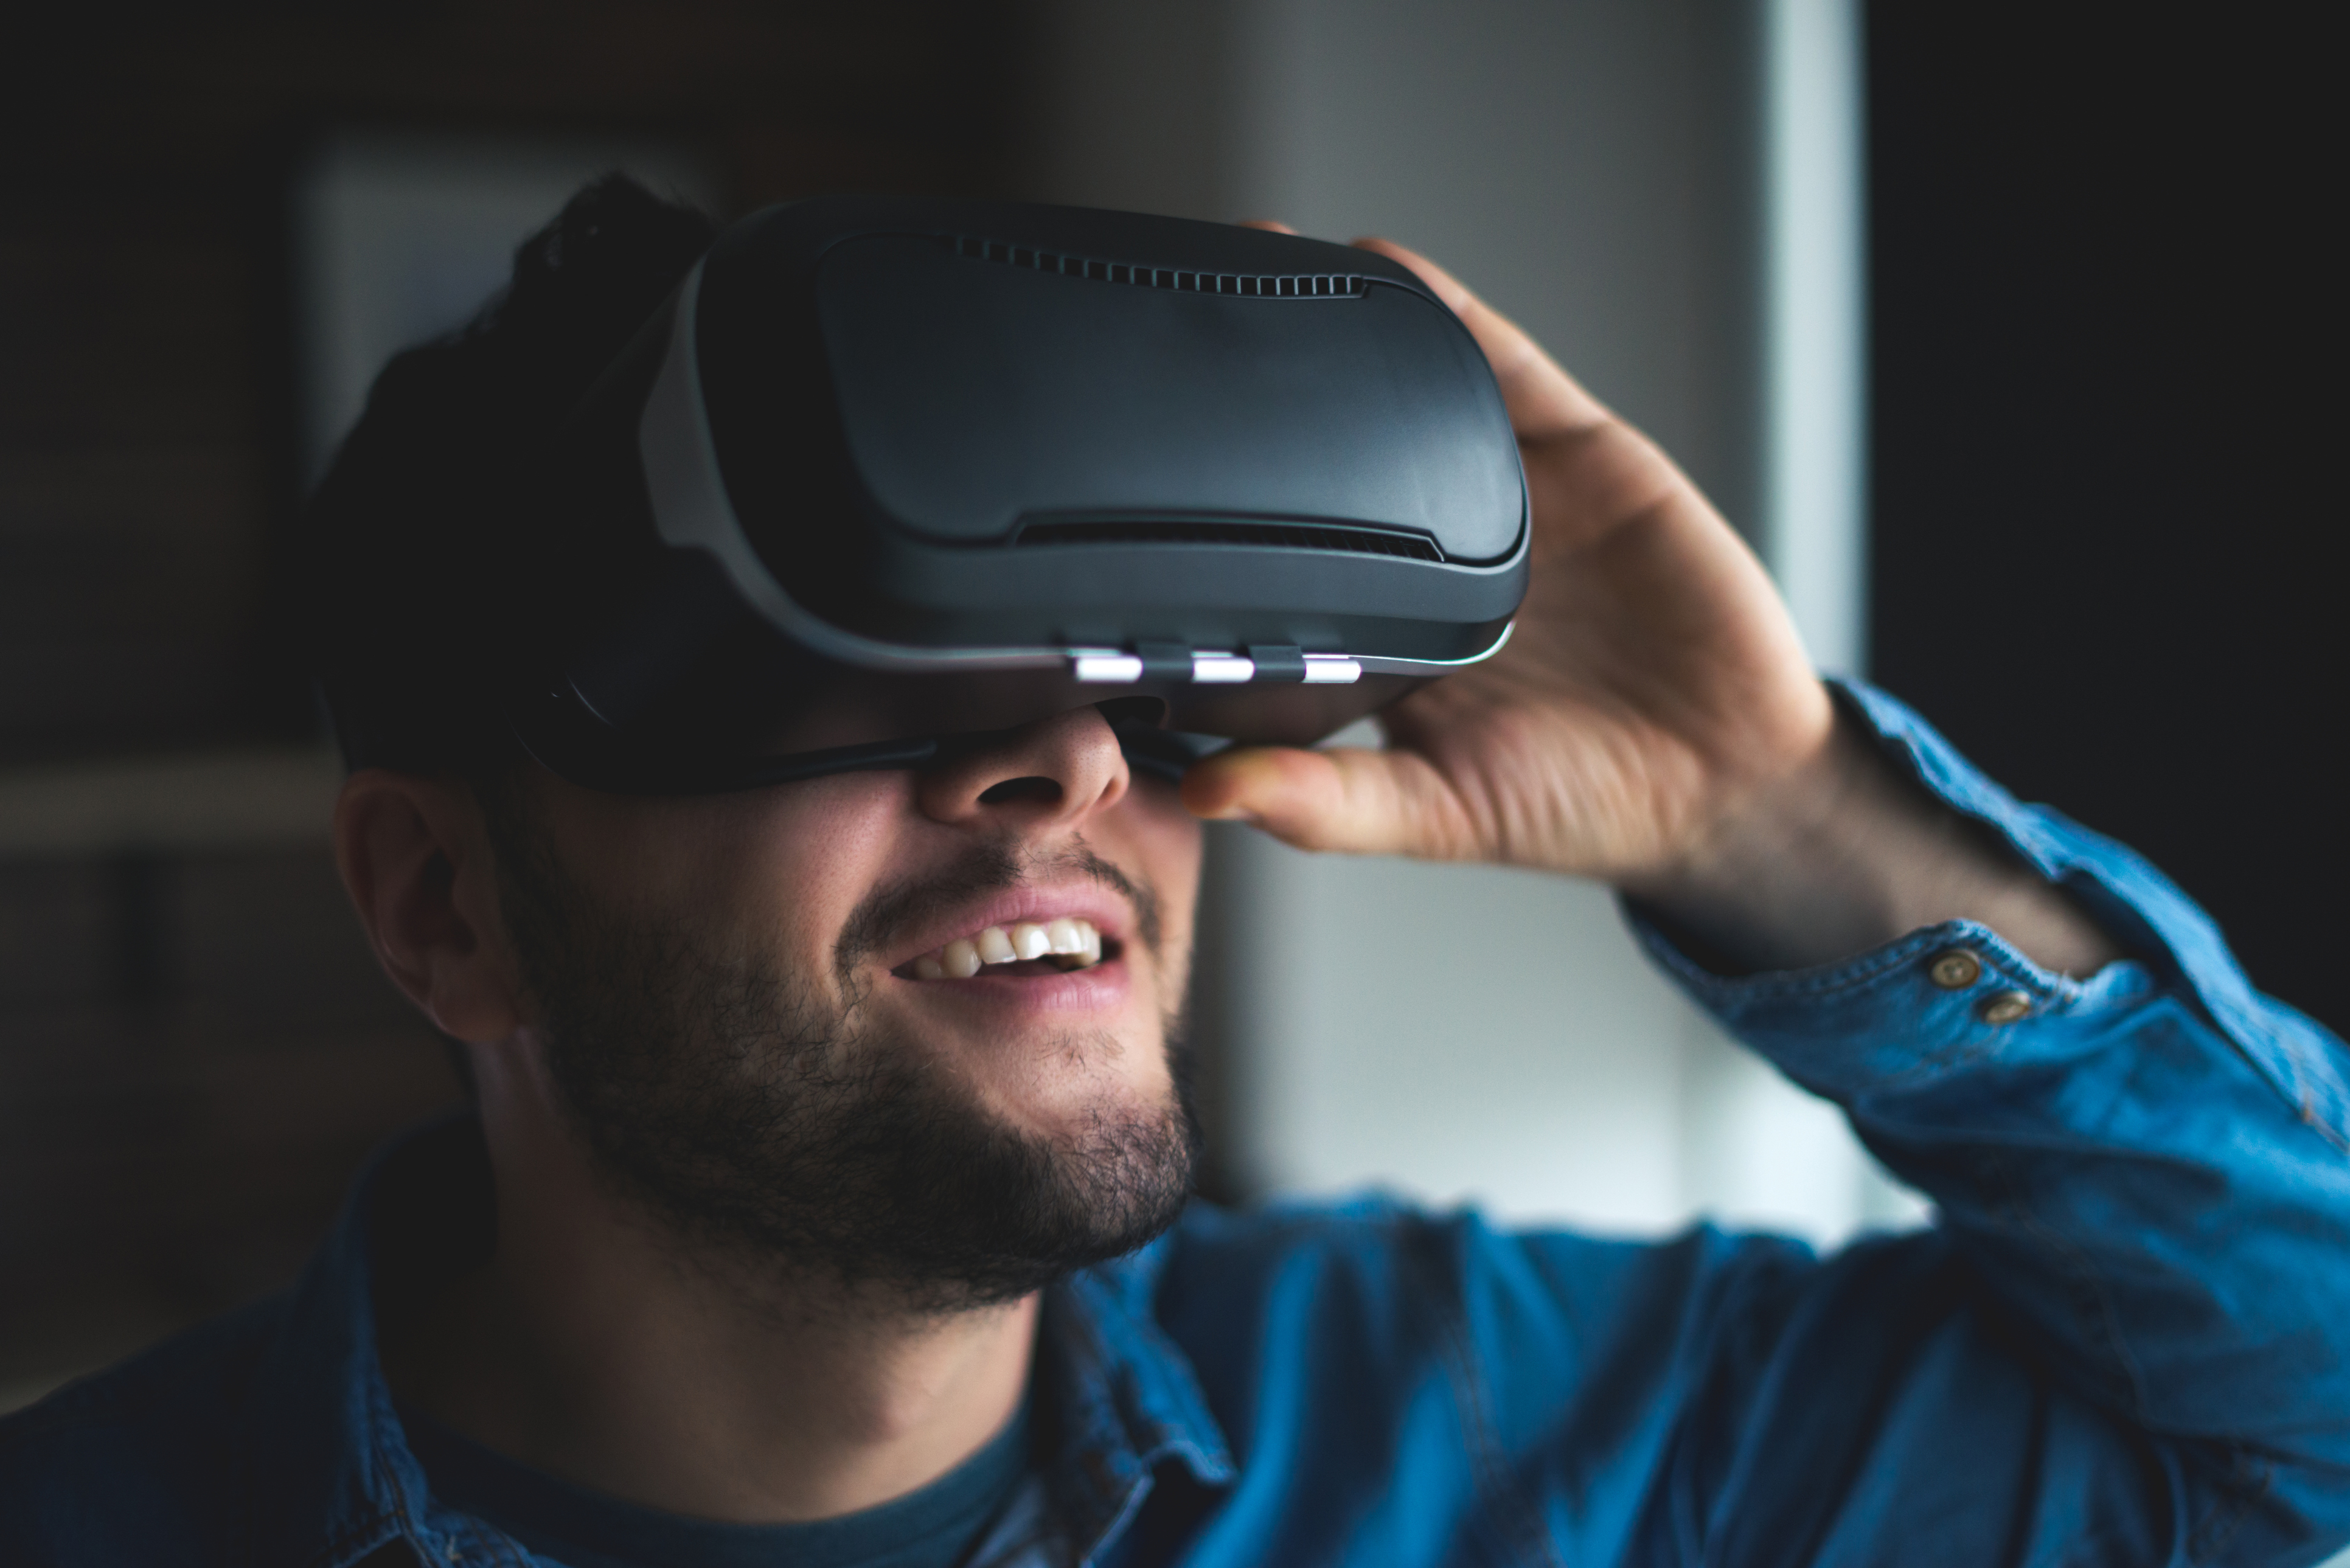 La realidad virtual y la realidad aumentada permiten crear experiencias de aprendizaje, especialmente en la realización de prácticas en laboratorios digitales, sin necesidad de equipamiento ni instalaciones.